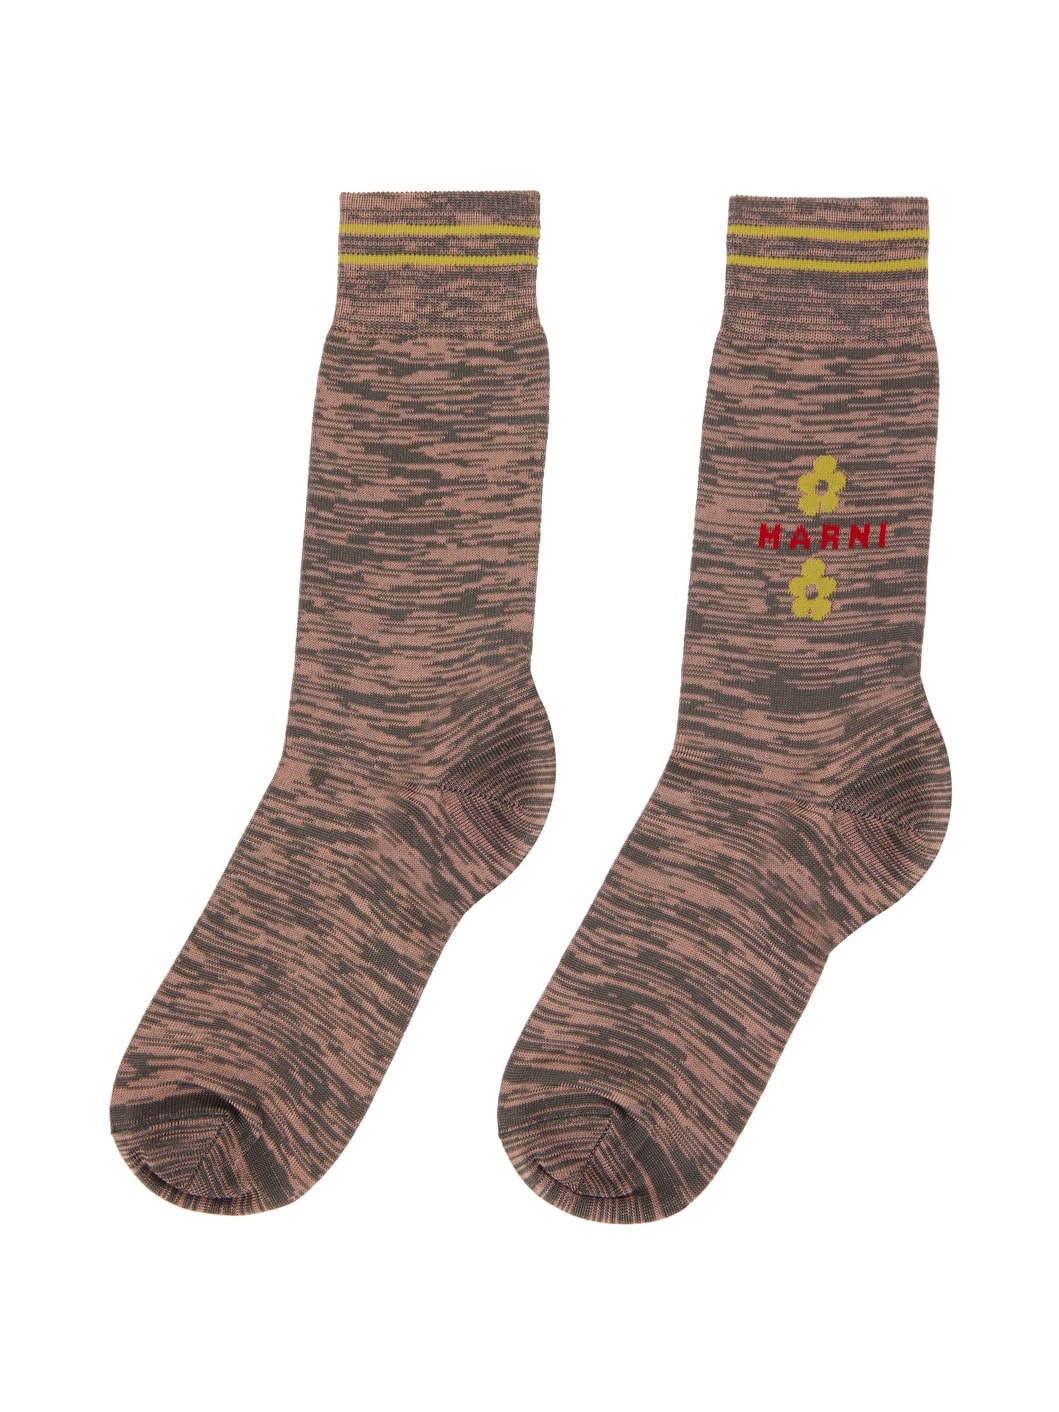 Pink & Gray Marled Socks - 2